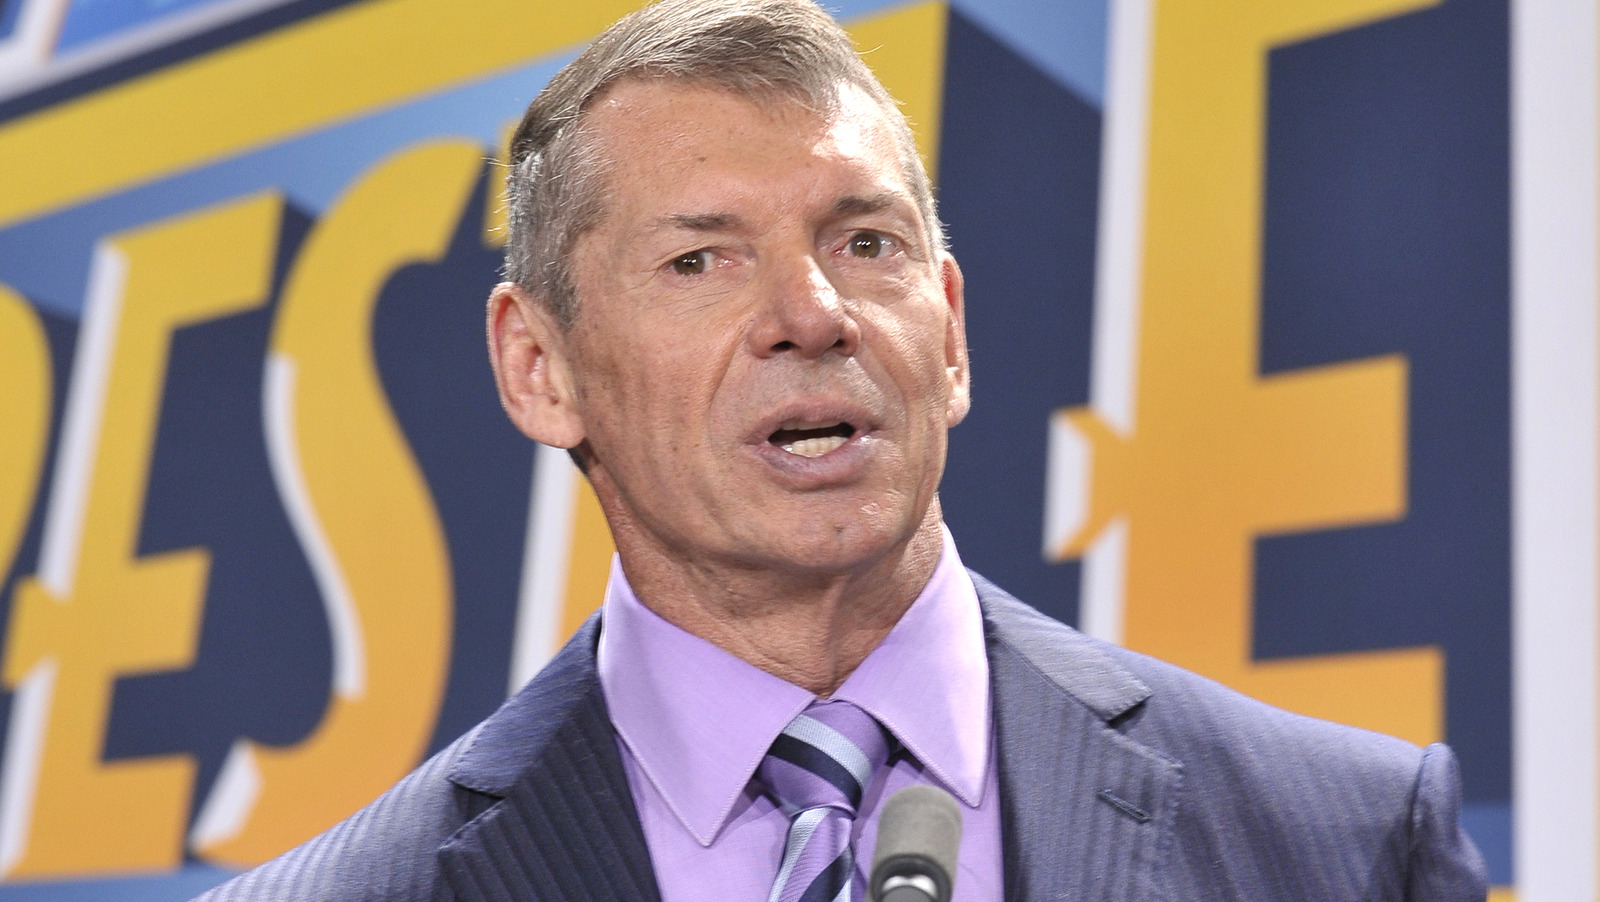 Se informa que WWE realiza cambios en la tienda Royal Rumble luego de las acusaciones de Vince McMahon